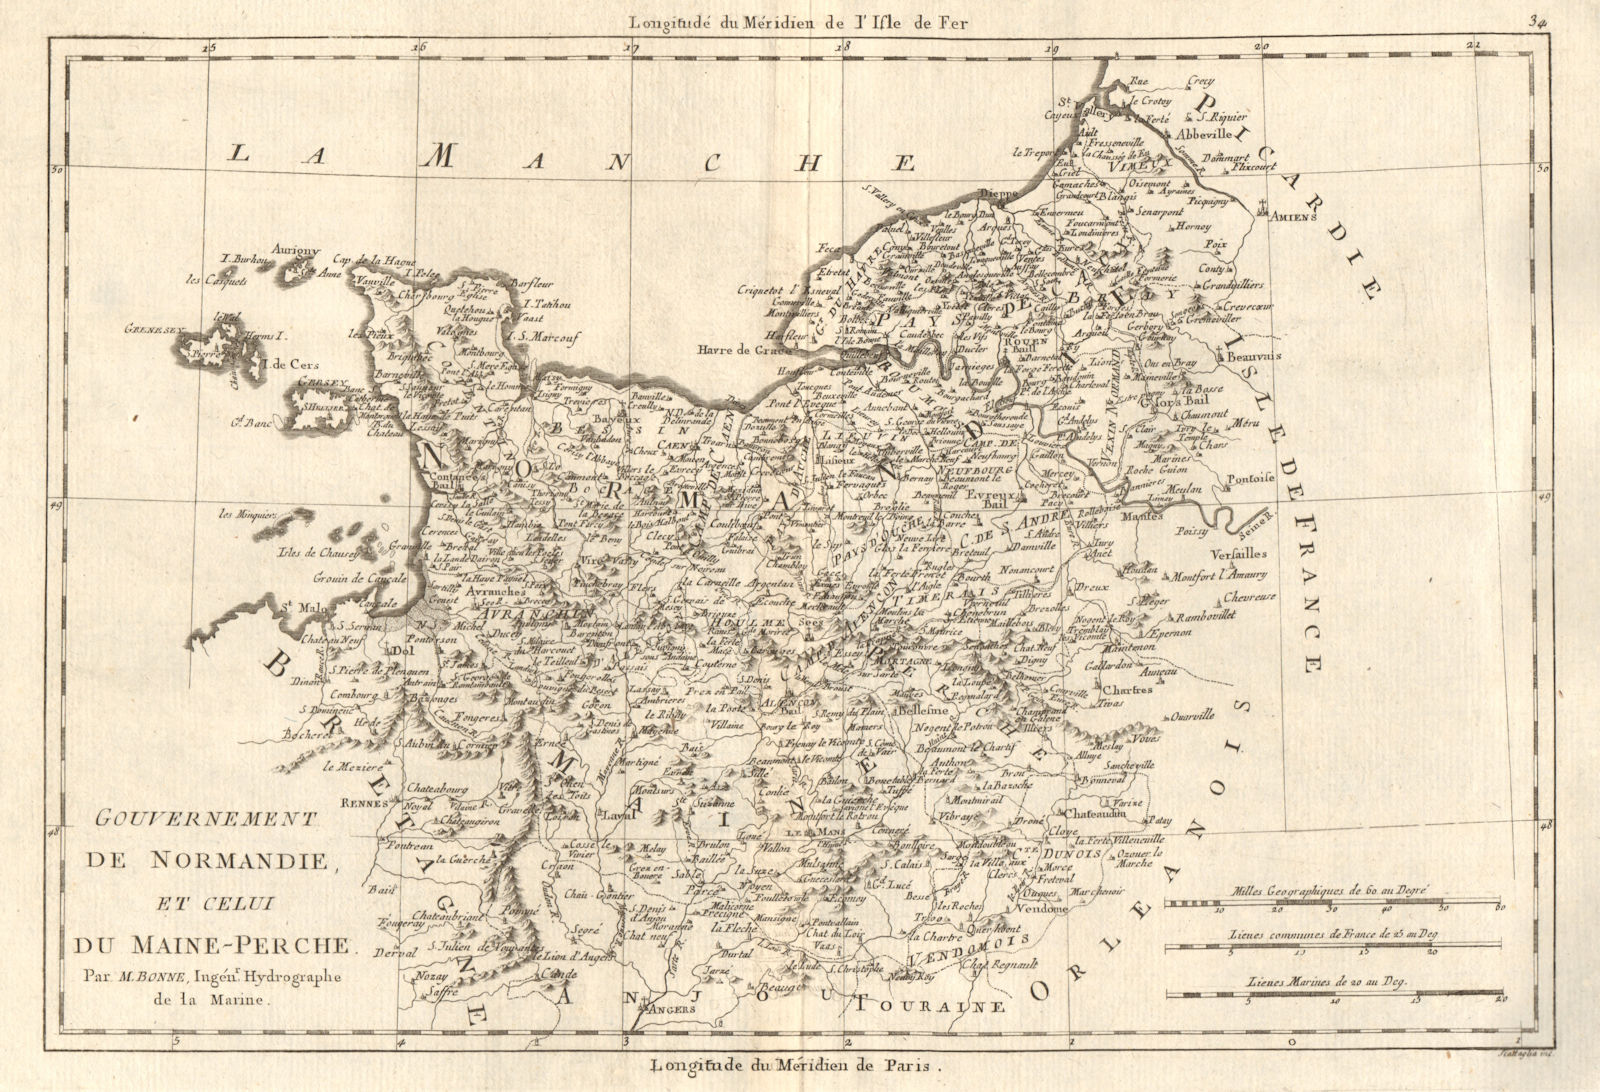 Gouvernement de Normandie et du Maine-Perche. Normandy. BONNE 1789 old map